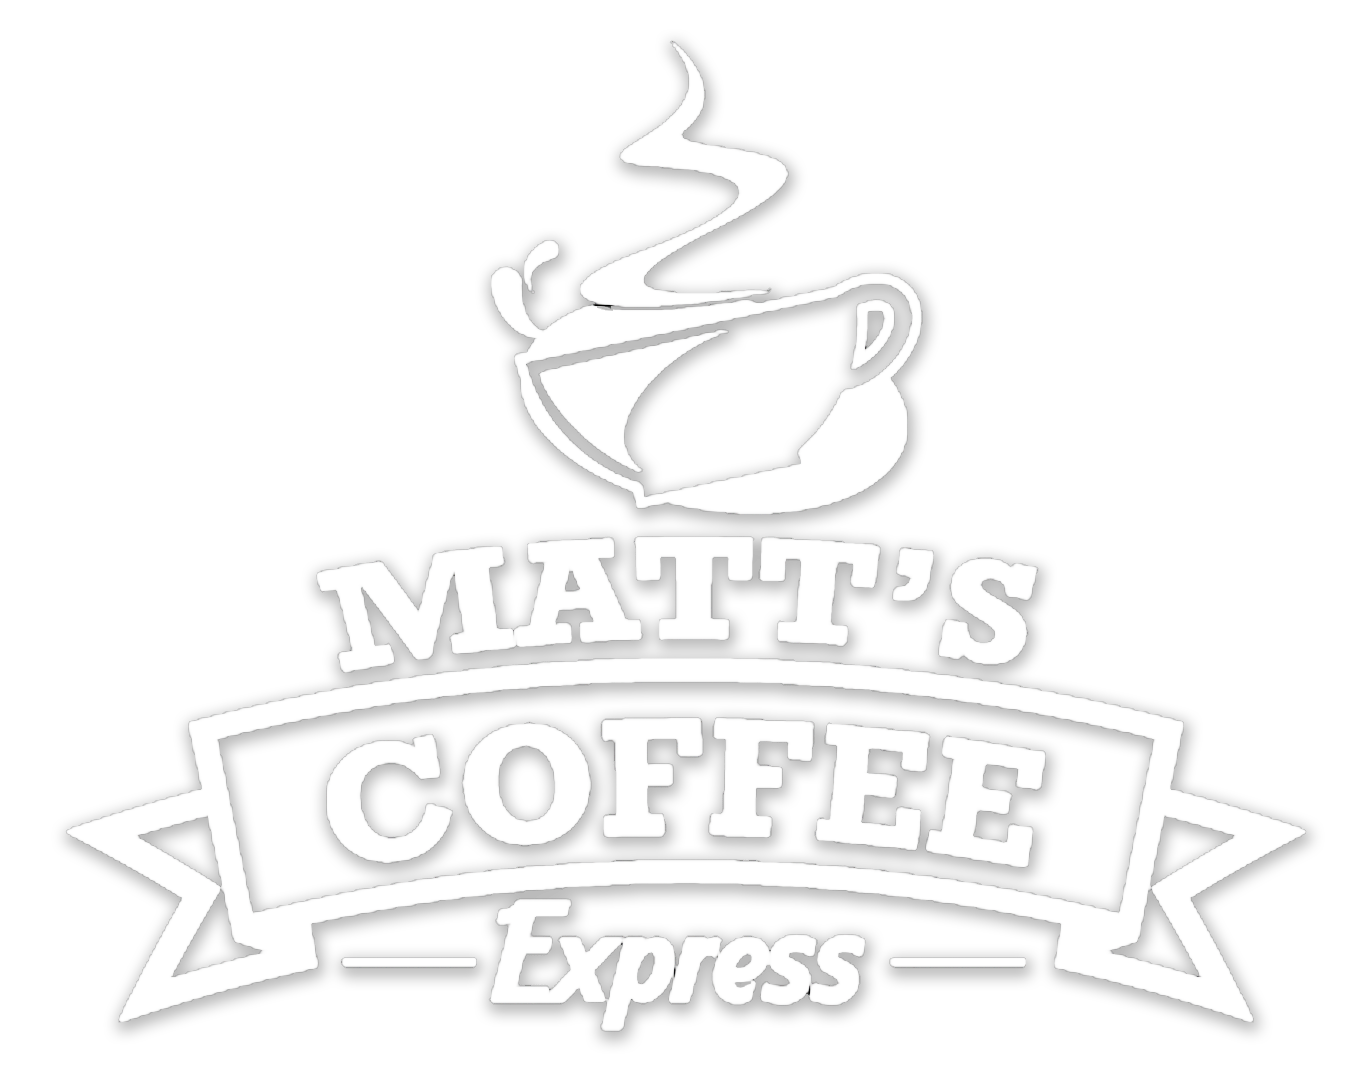 Matt's Coffee Express